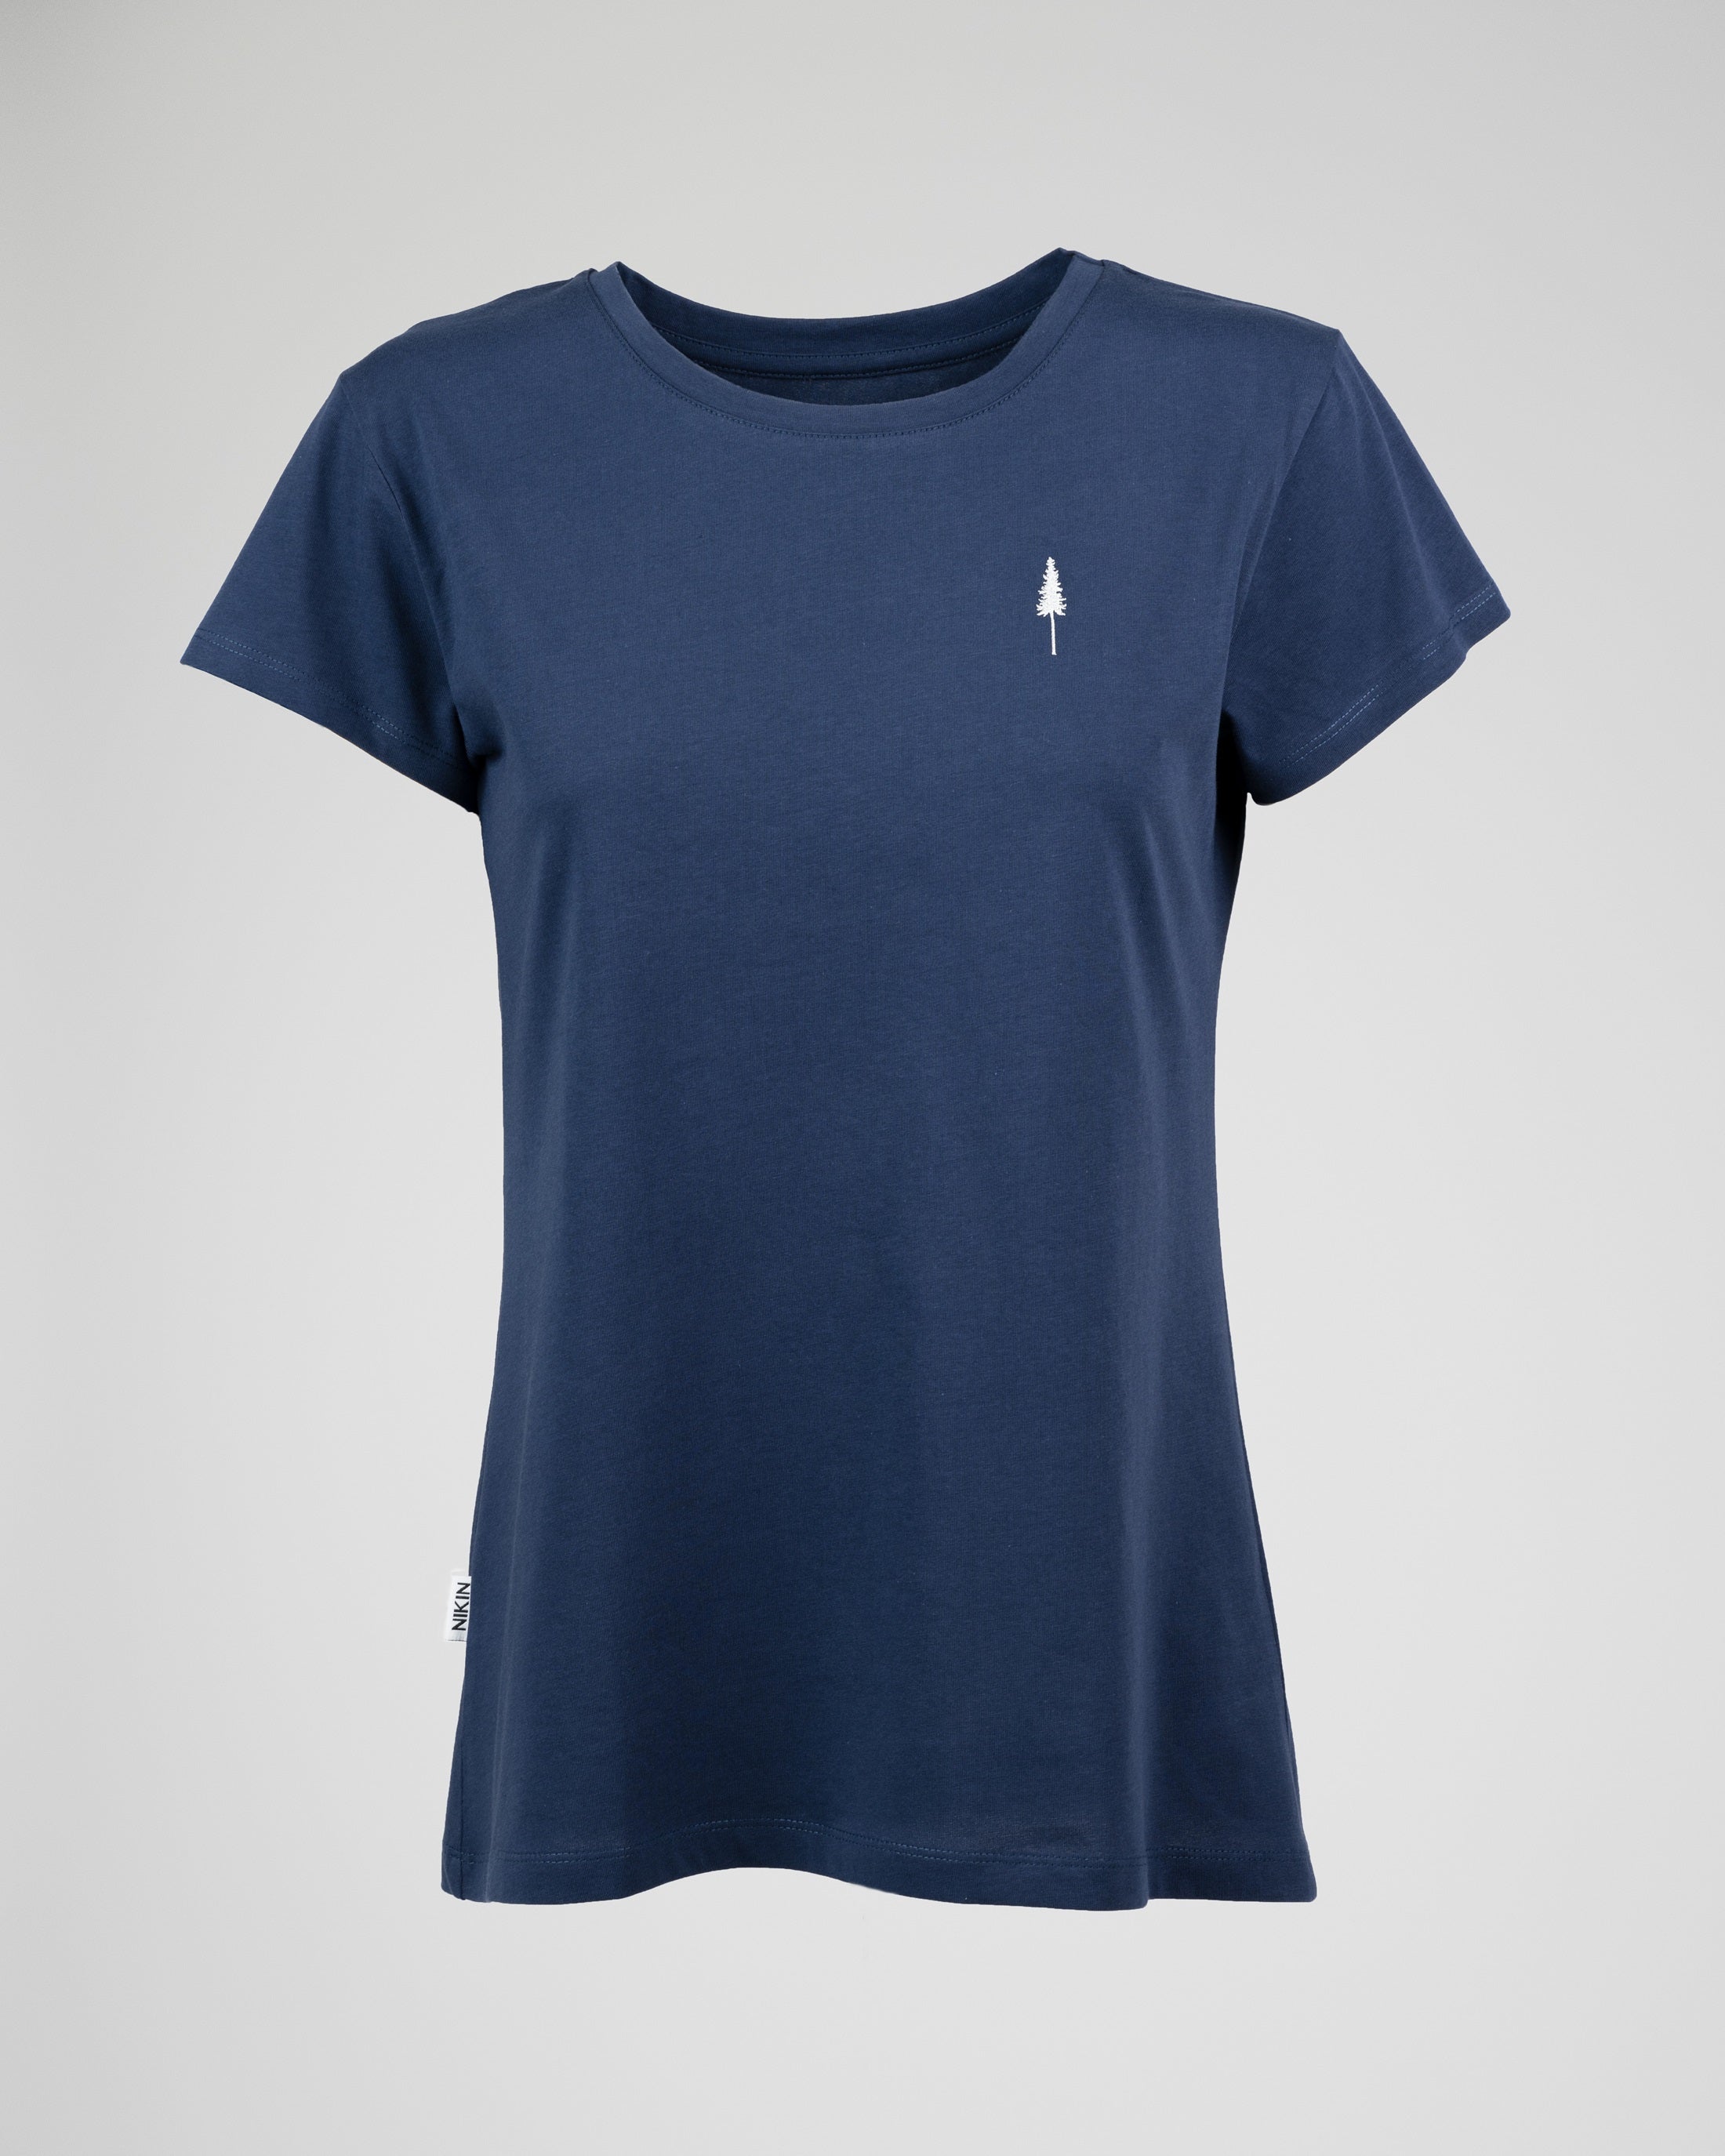 Women's organic cotton T-shirt Treeshirt Navy